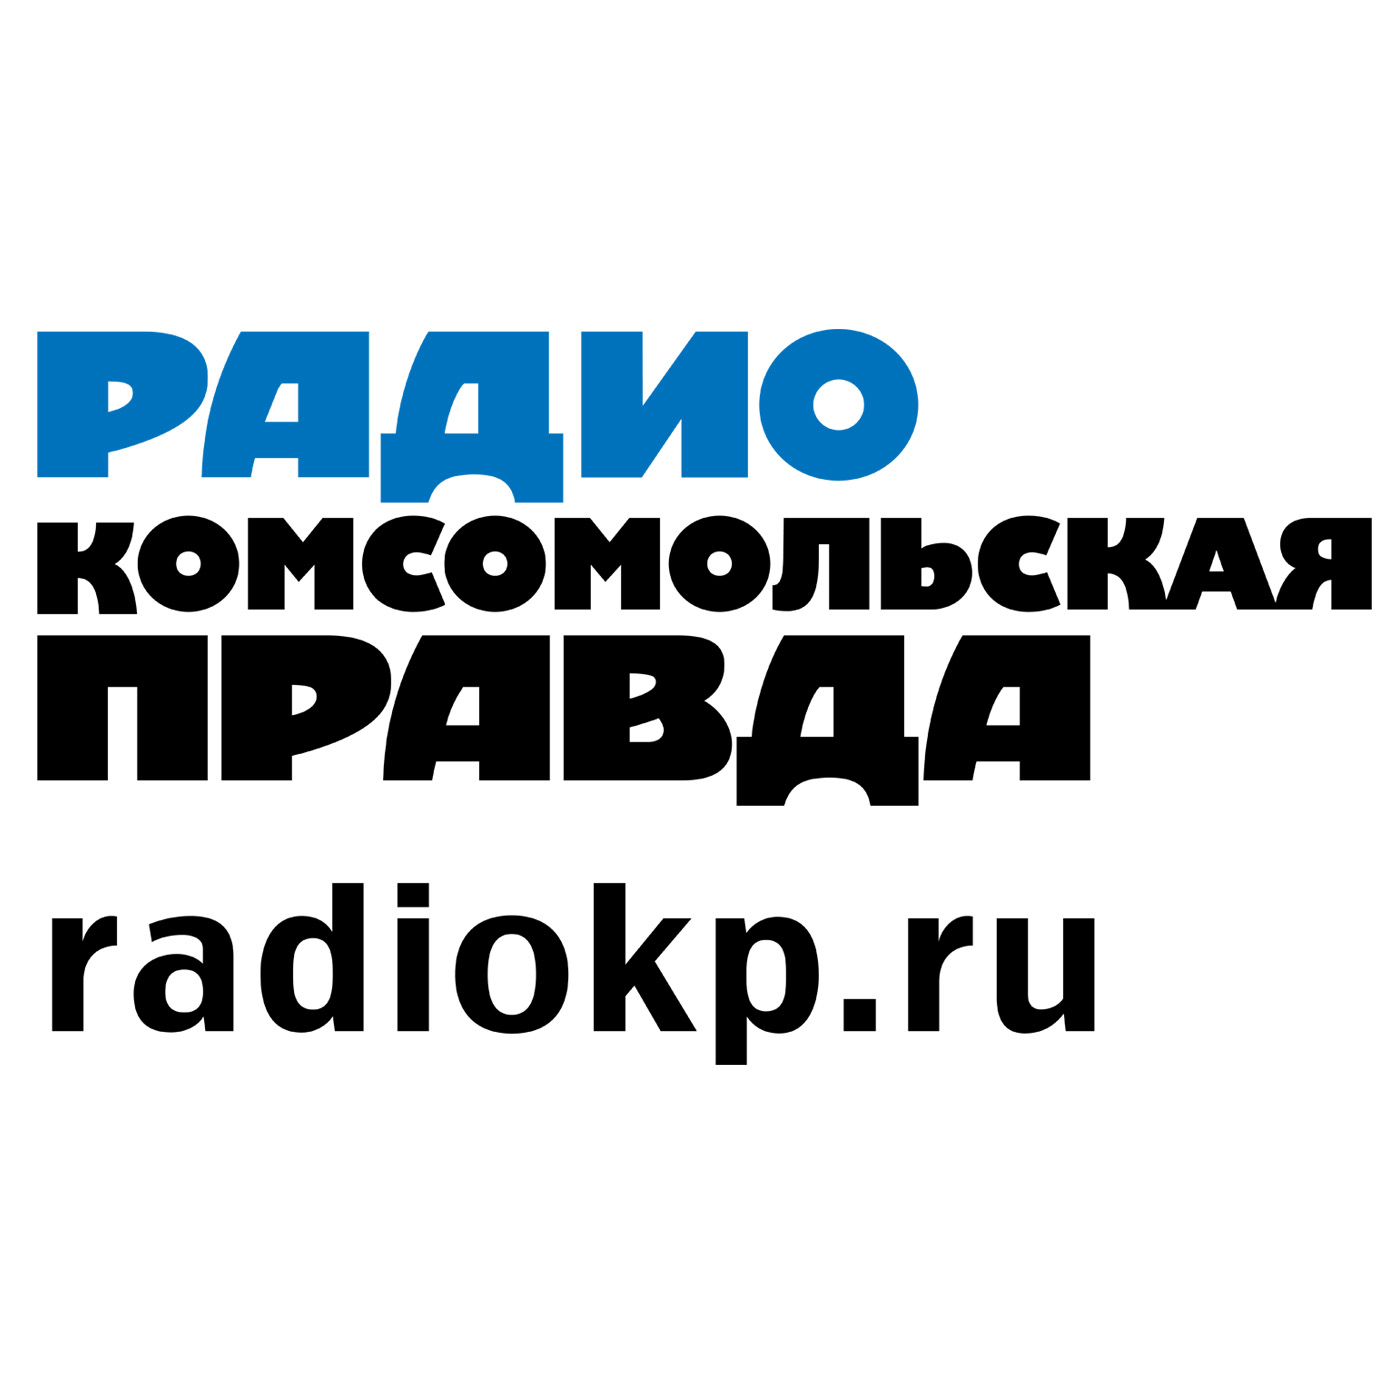 Народный адвокат:Радио «Комсомольская правда»